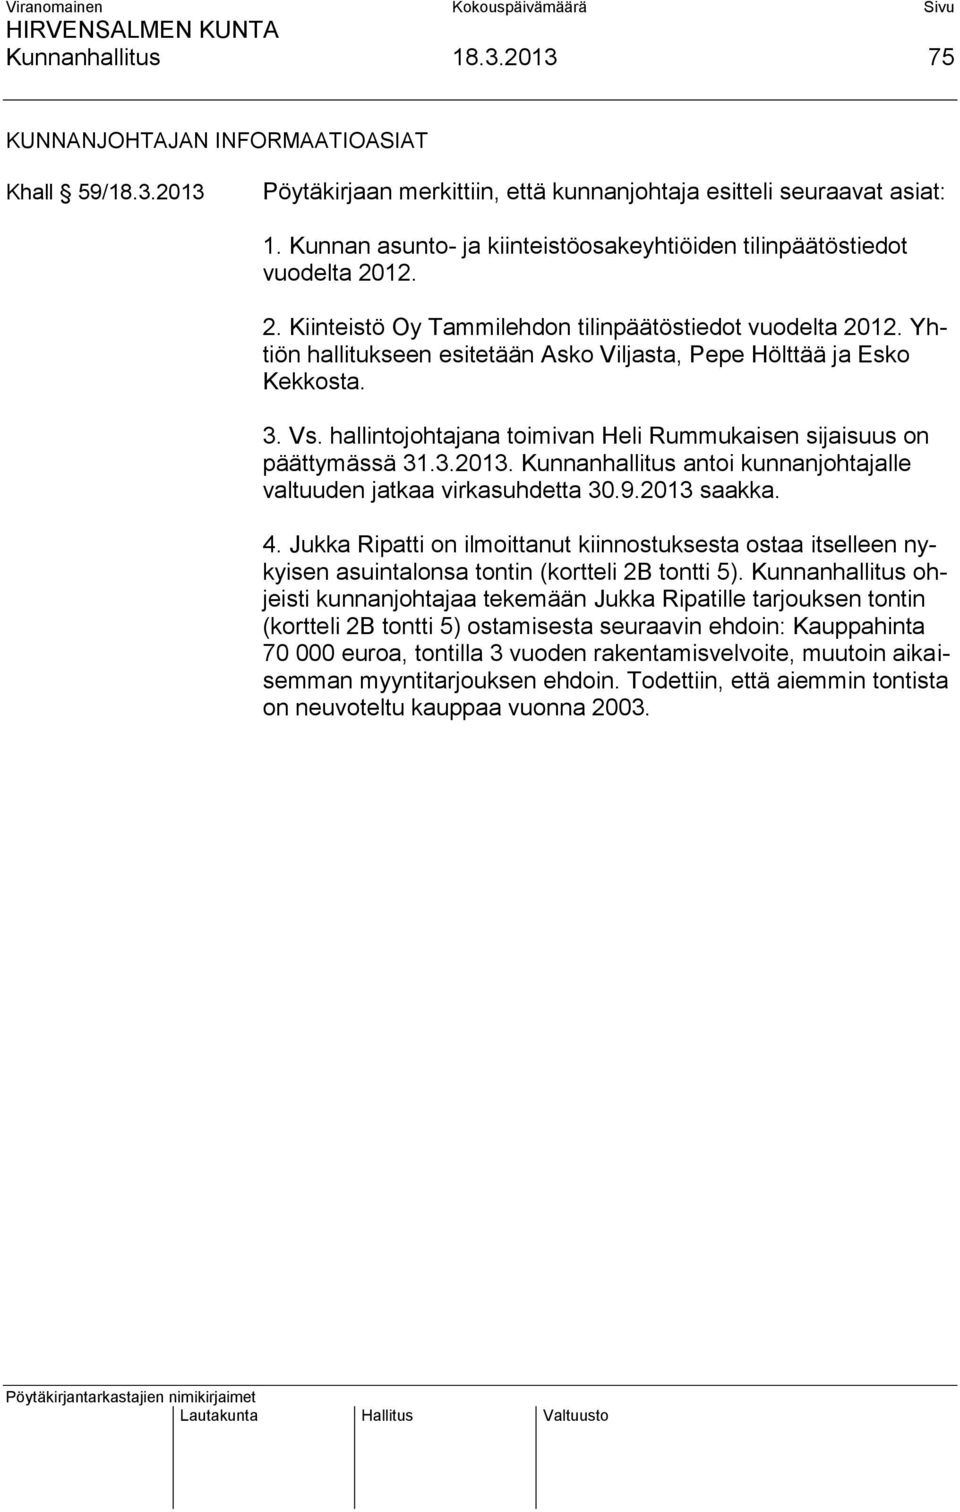 Yhtiön hallitukseen esitetään Asko Viljasta, Pepe Hölttää ja Esko Kekkosta. 3. Vs. hallintojohtajana toimivan Heli Rummukaisen sijaisuus on päättymässä 31.3.2013.